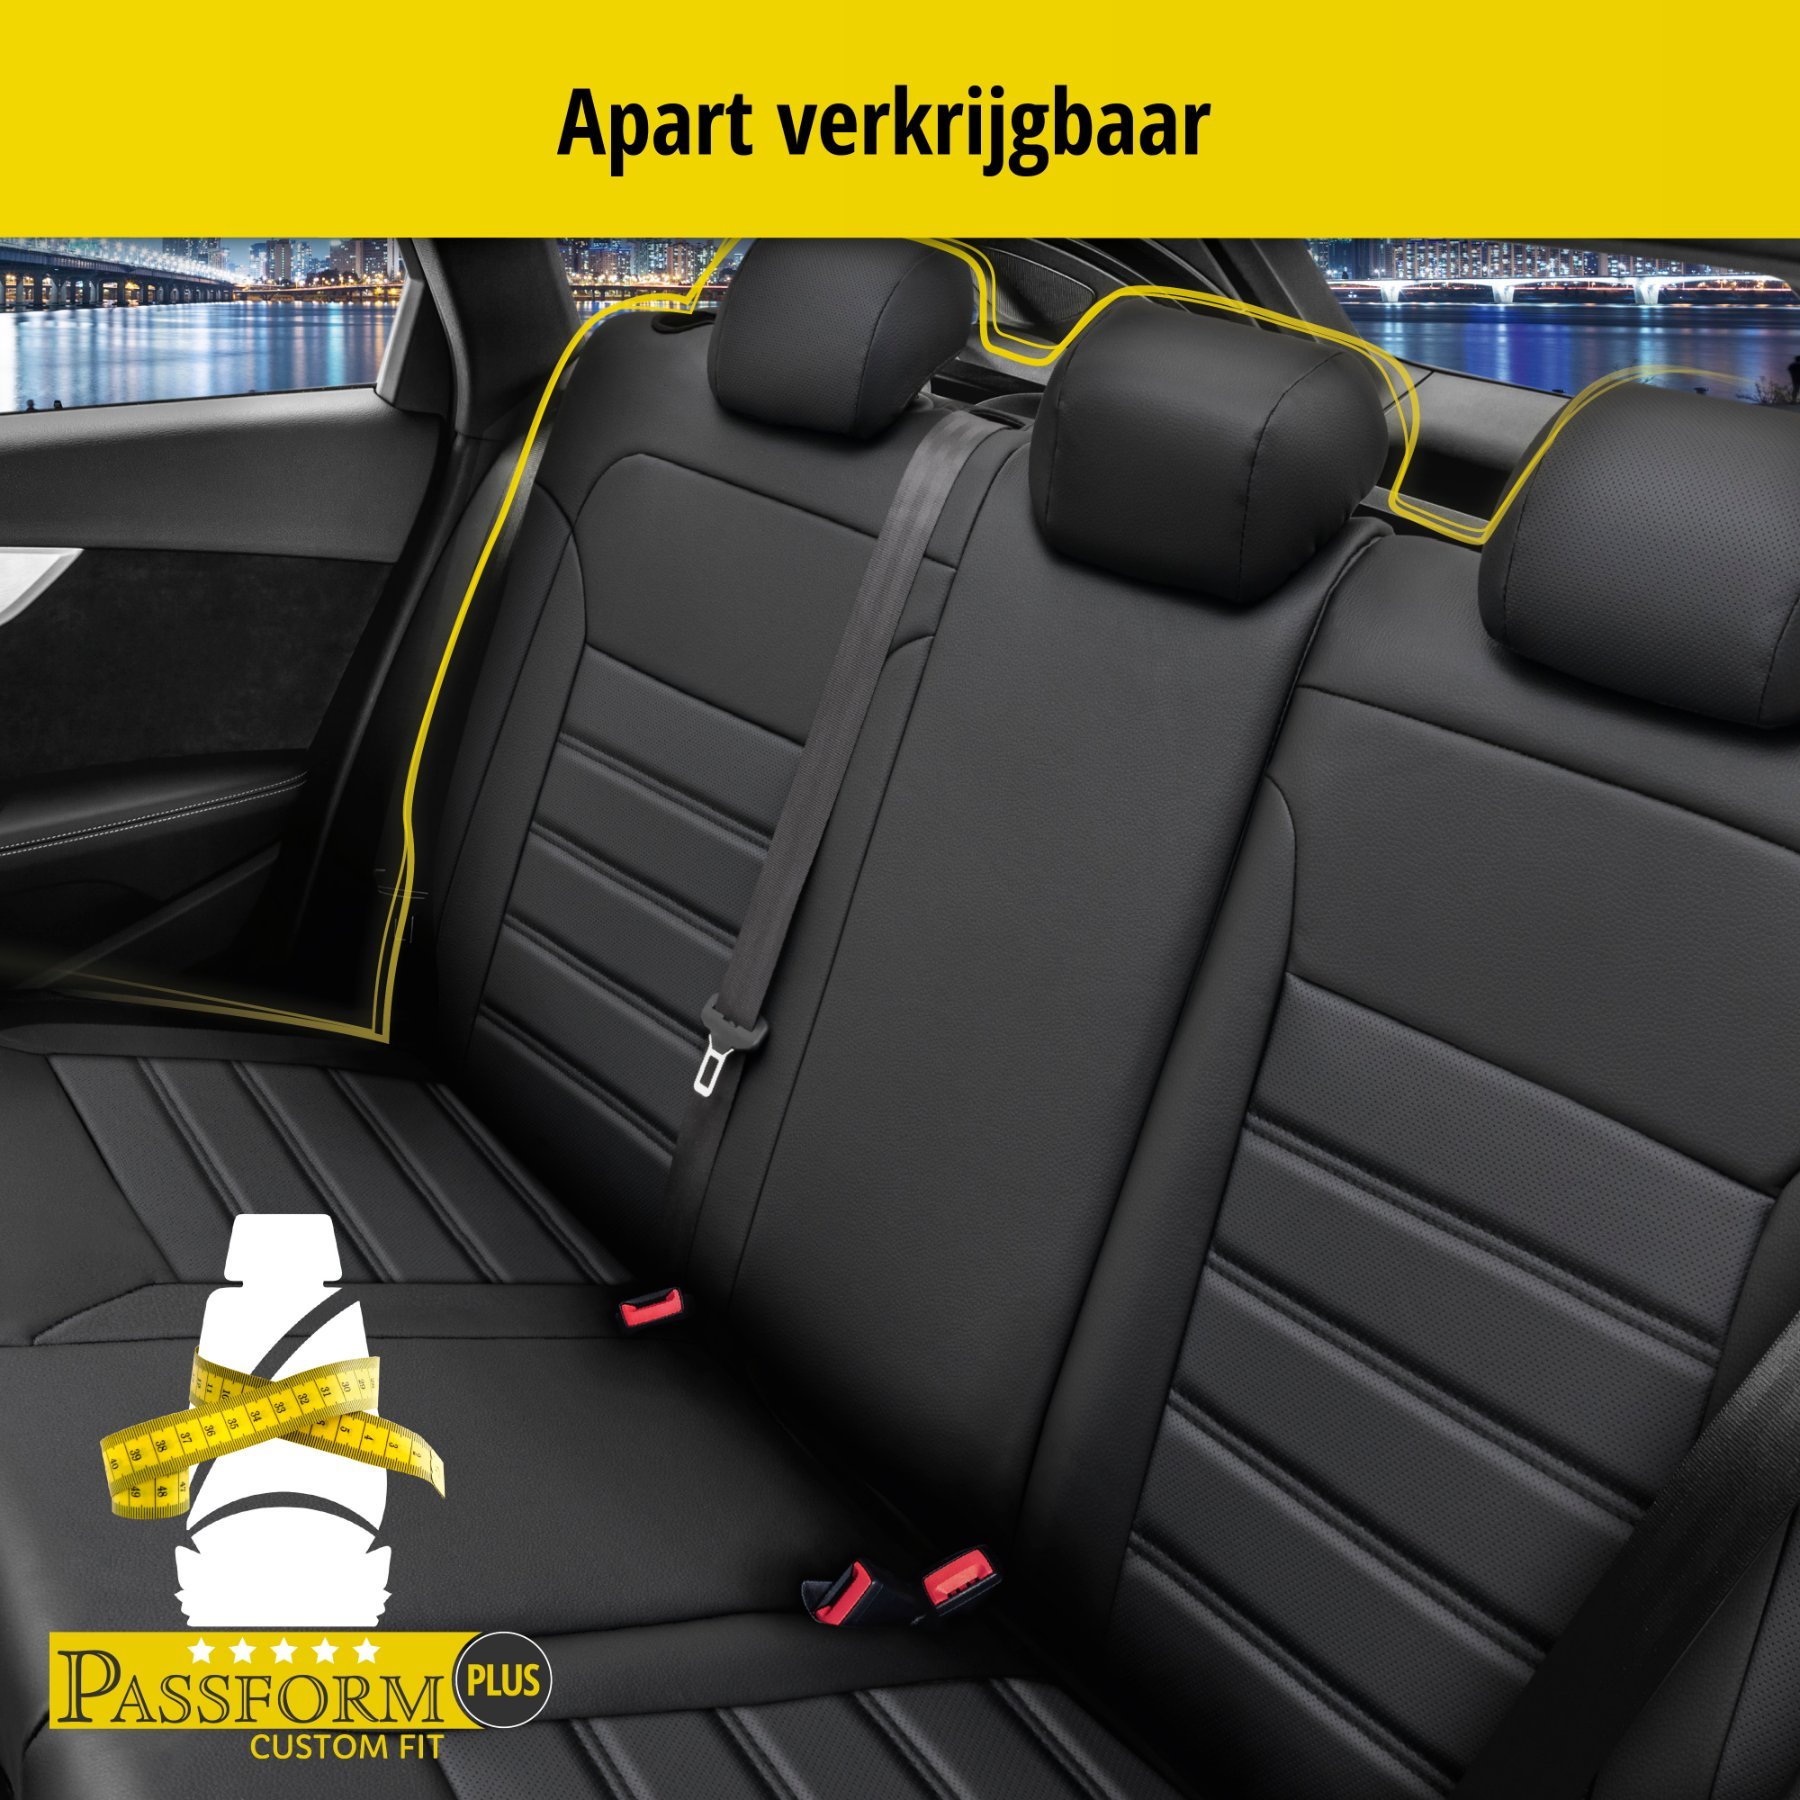 Auto stoelbekleding Robusto geschikt voor Audi A3 (8V1, 8VK) 04/2012-Vandaag, 2 enkele zetelhoezen voor sportzetels